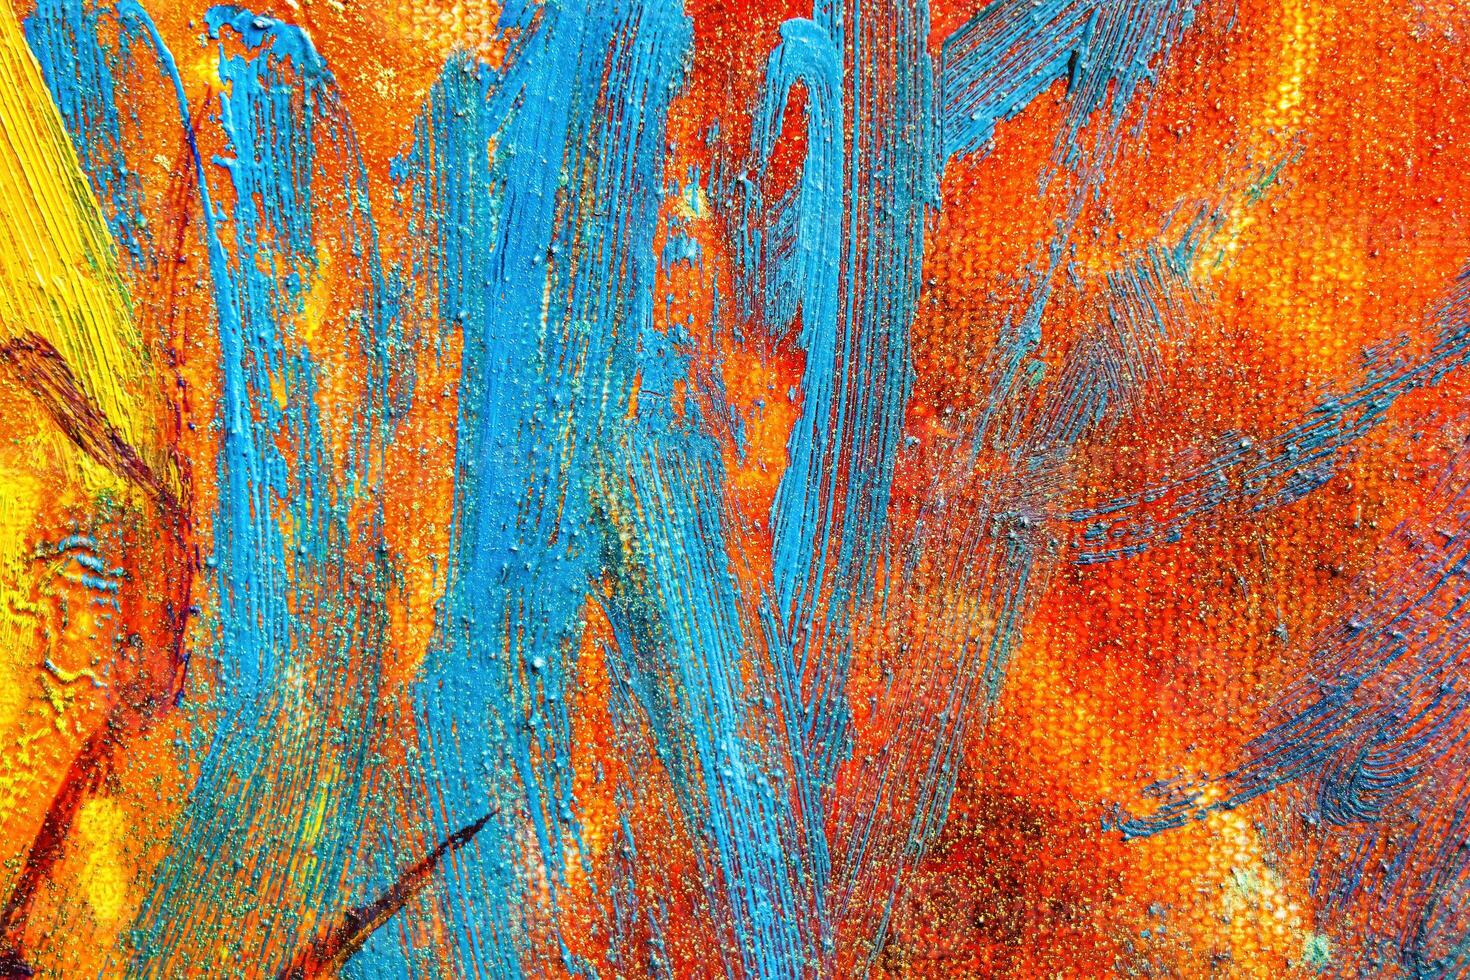 färgrik abstrakt olja målning konst bakgrund. textur av duk och olja. foto